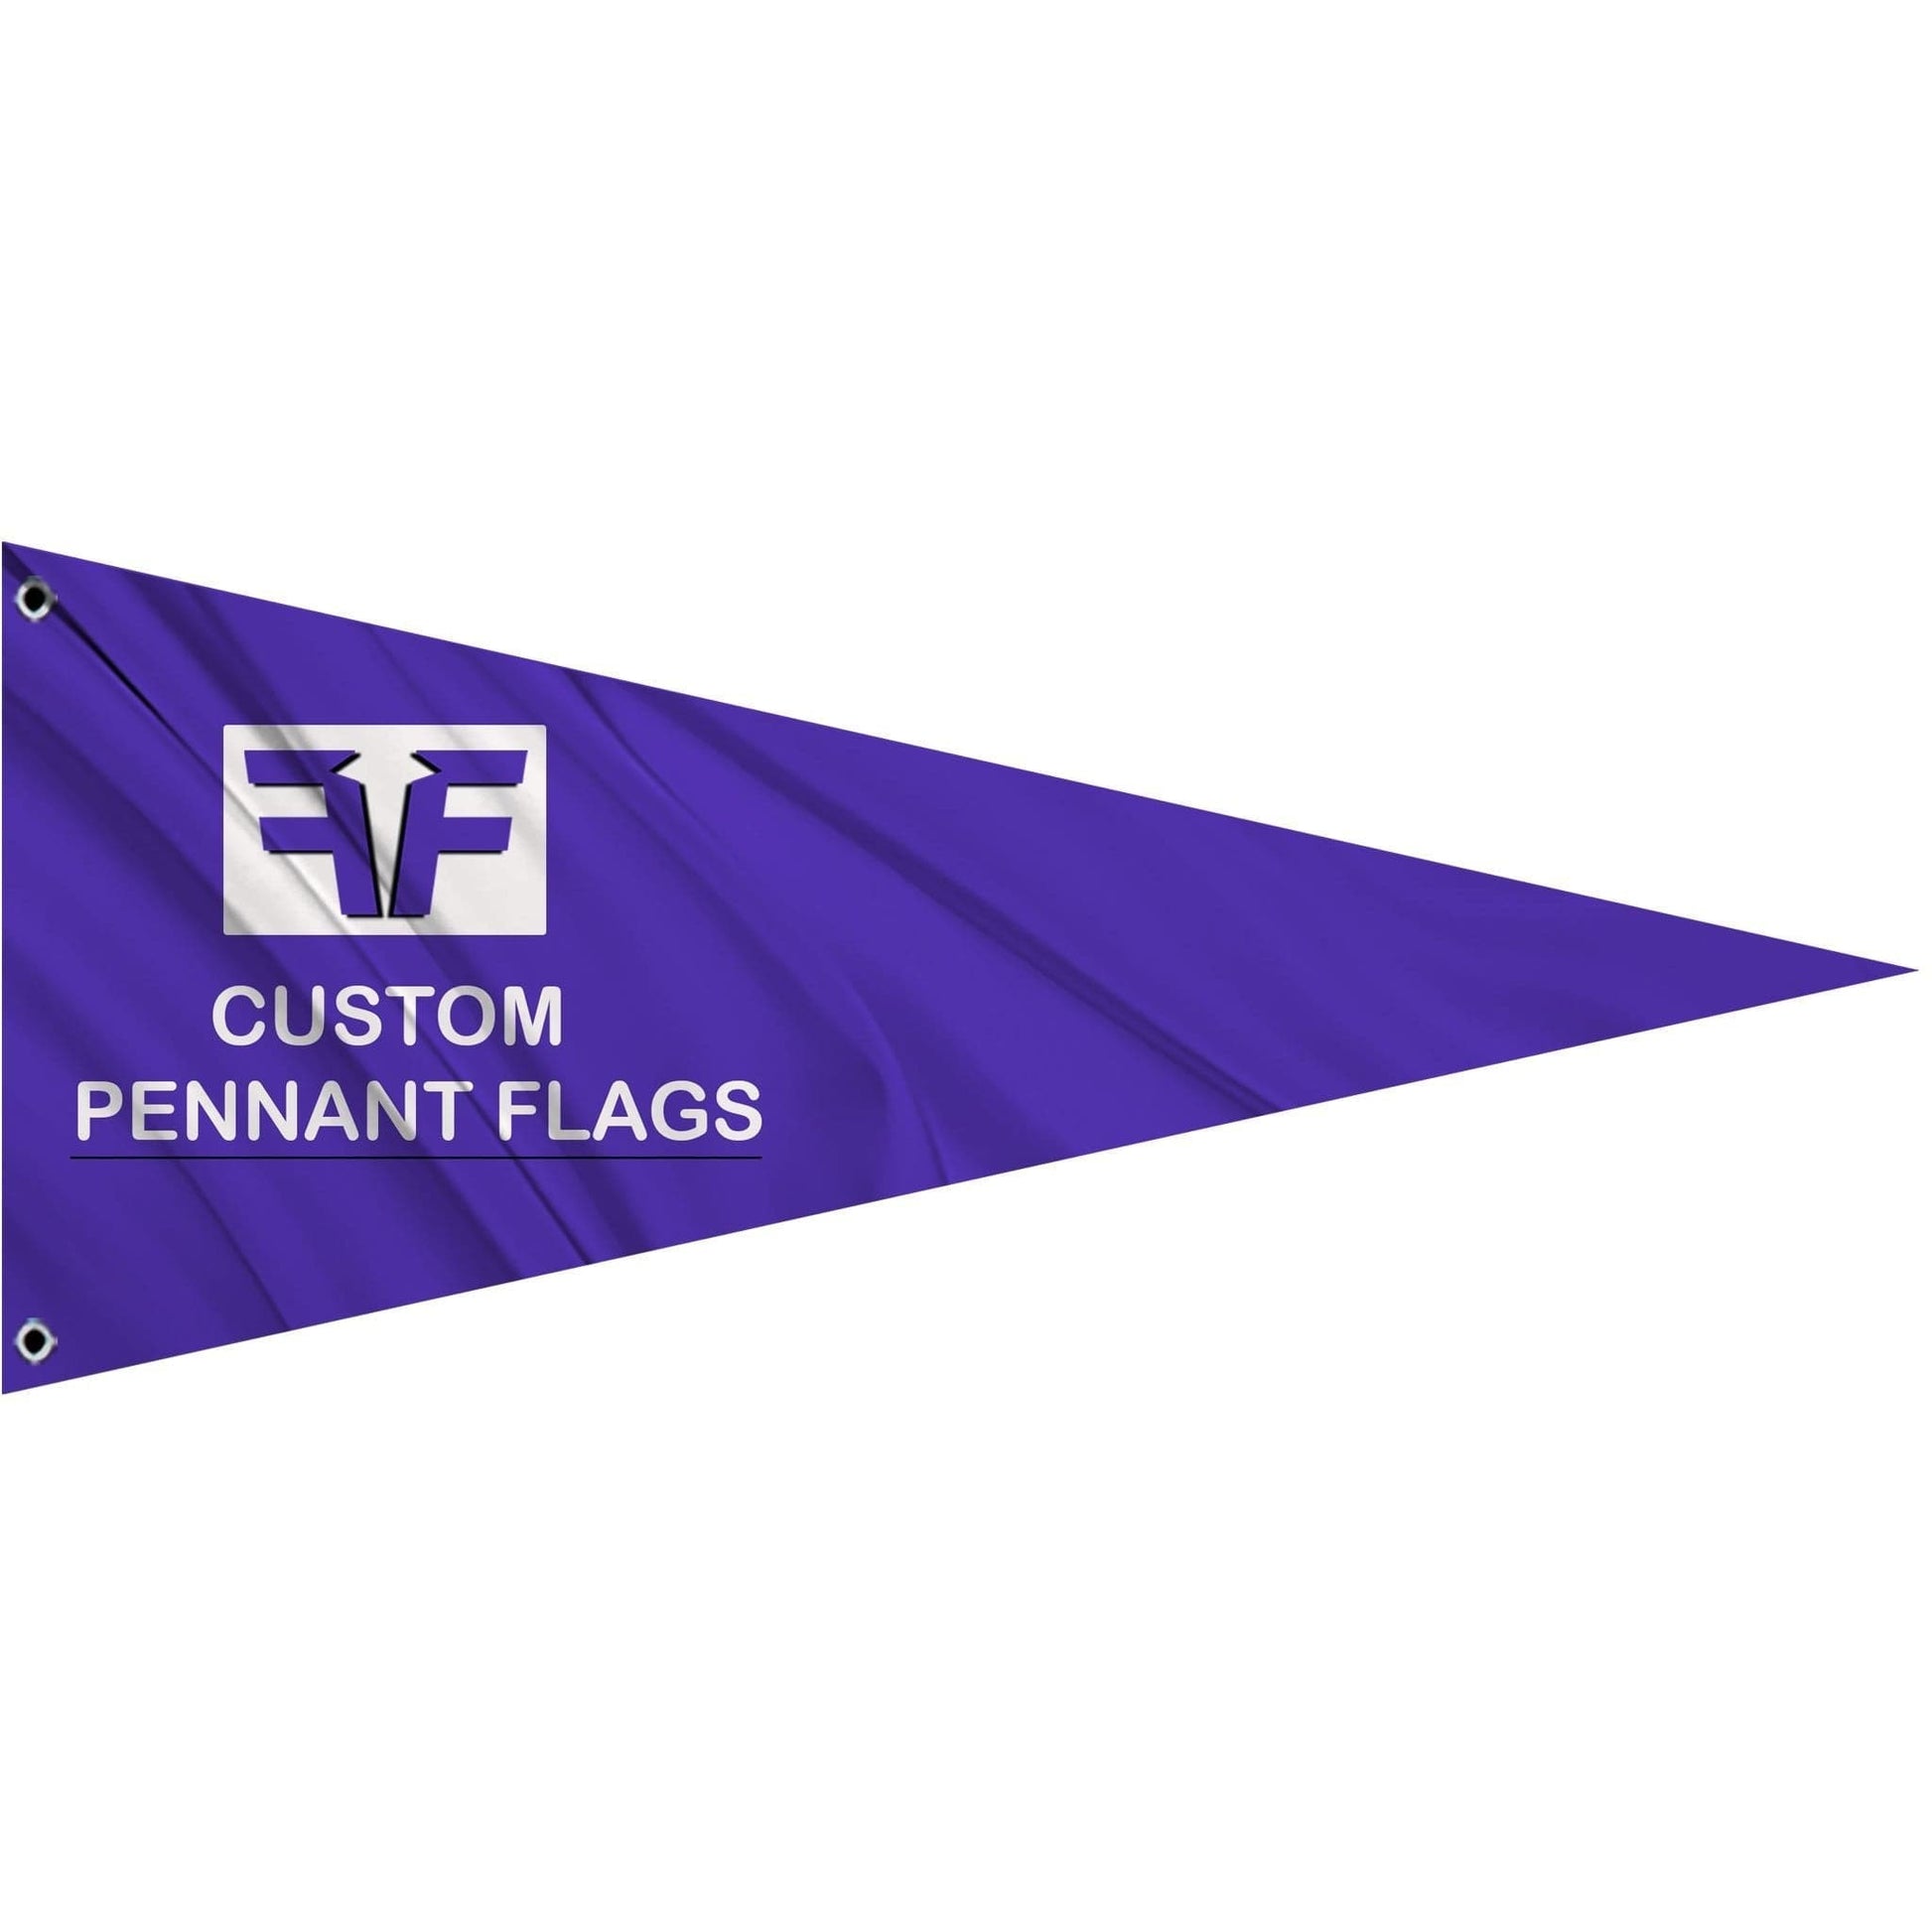 Fest Flags Custom Pennant Flags 8 X 18 Inch Pennant / Single Sided Custom Pennant Flags